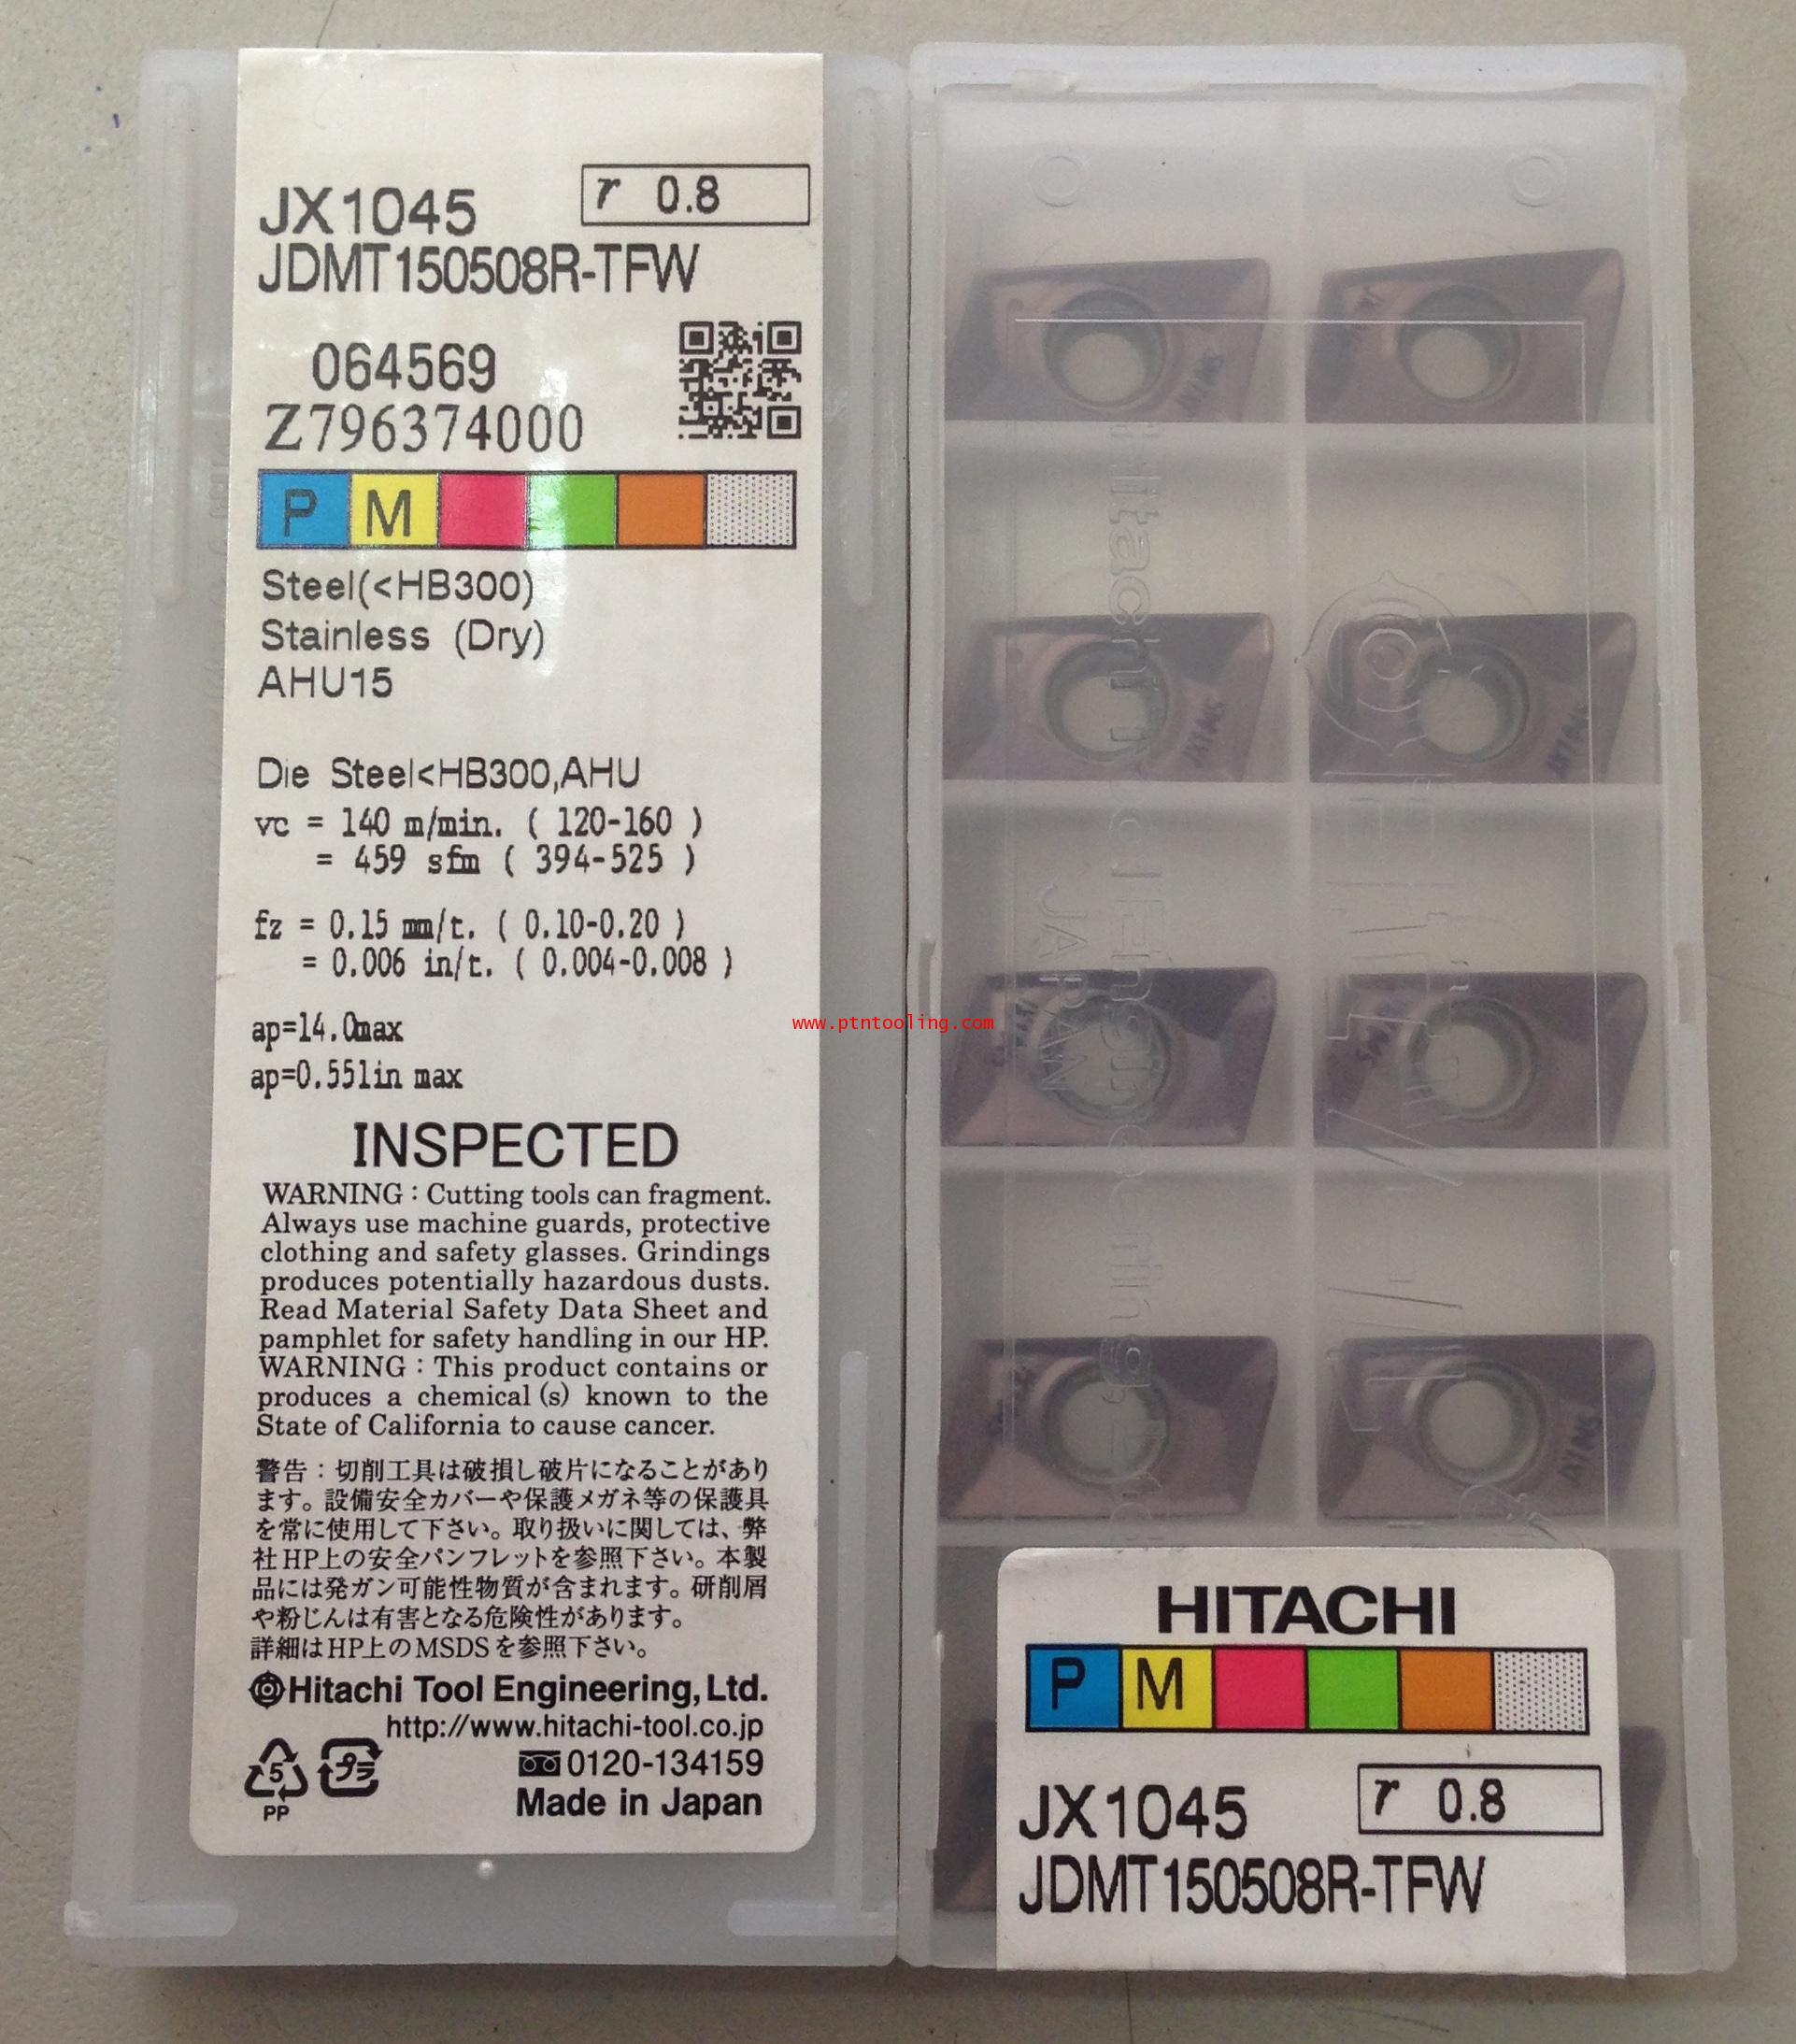 เม็ดมีด JDMT 150508R - TFW JX1045 Hitachi